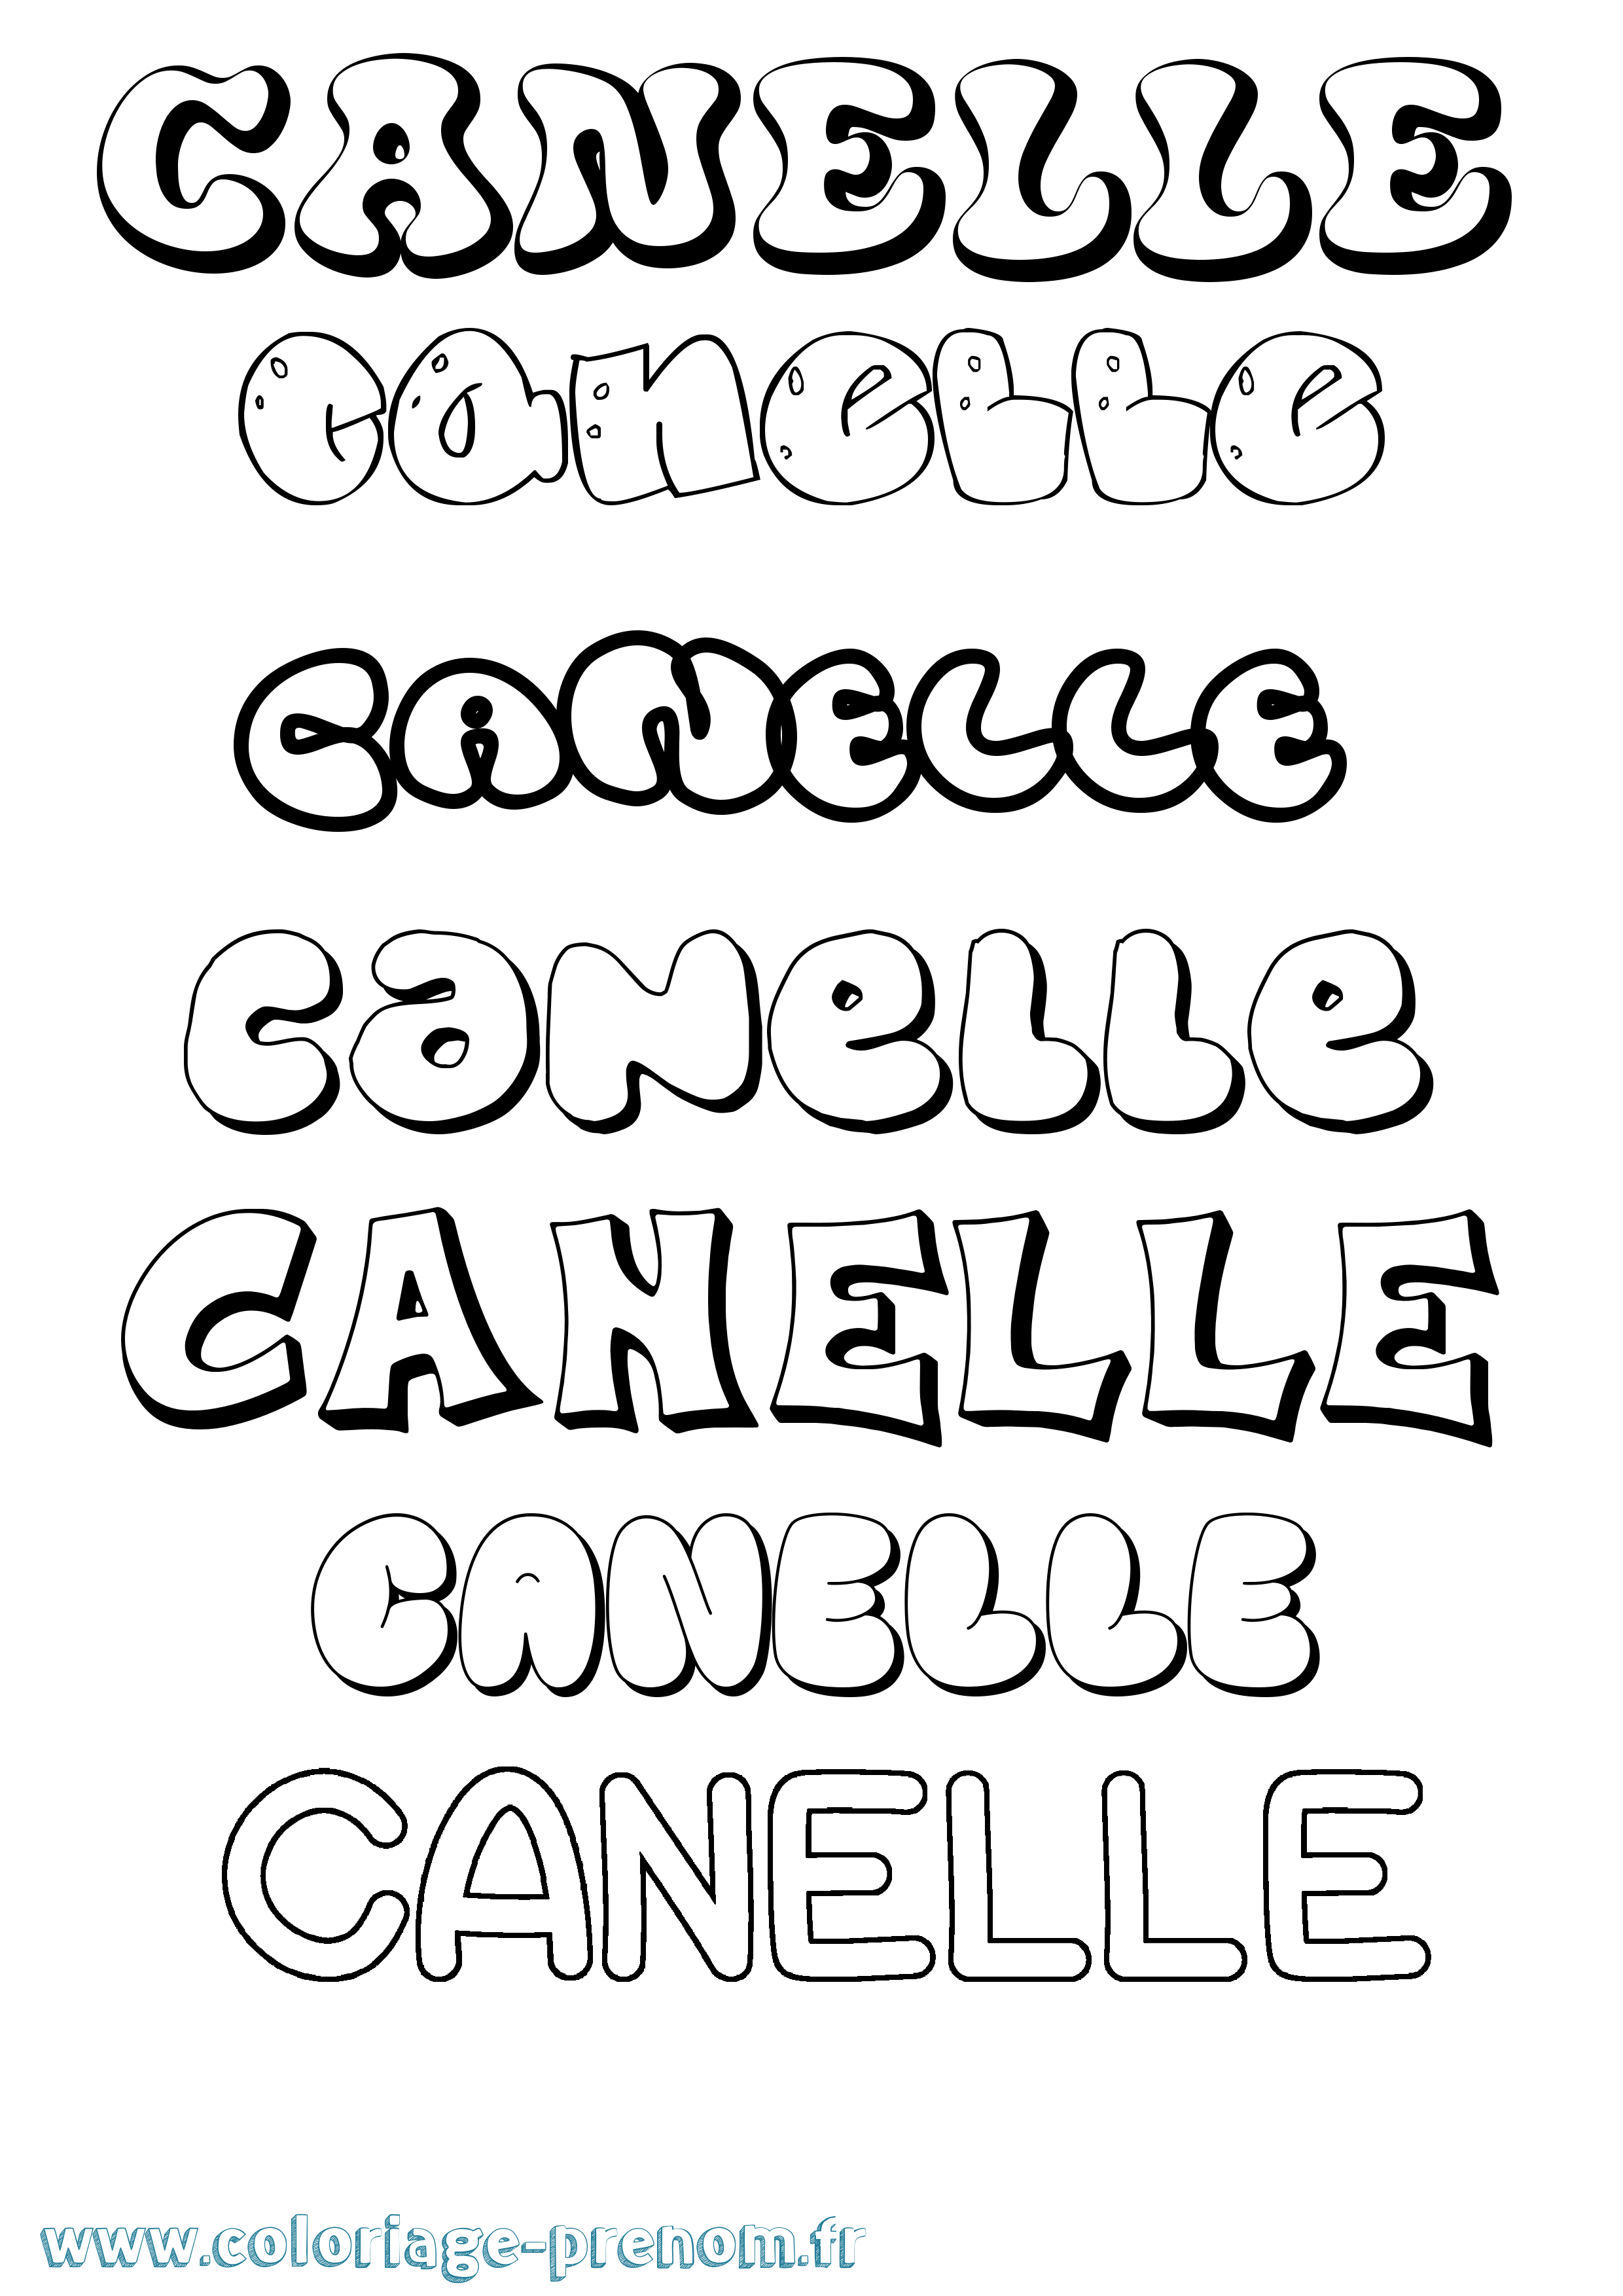 Coloriage prénom Canelle Bubble